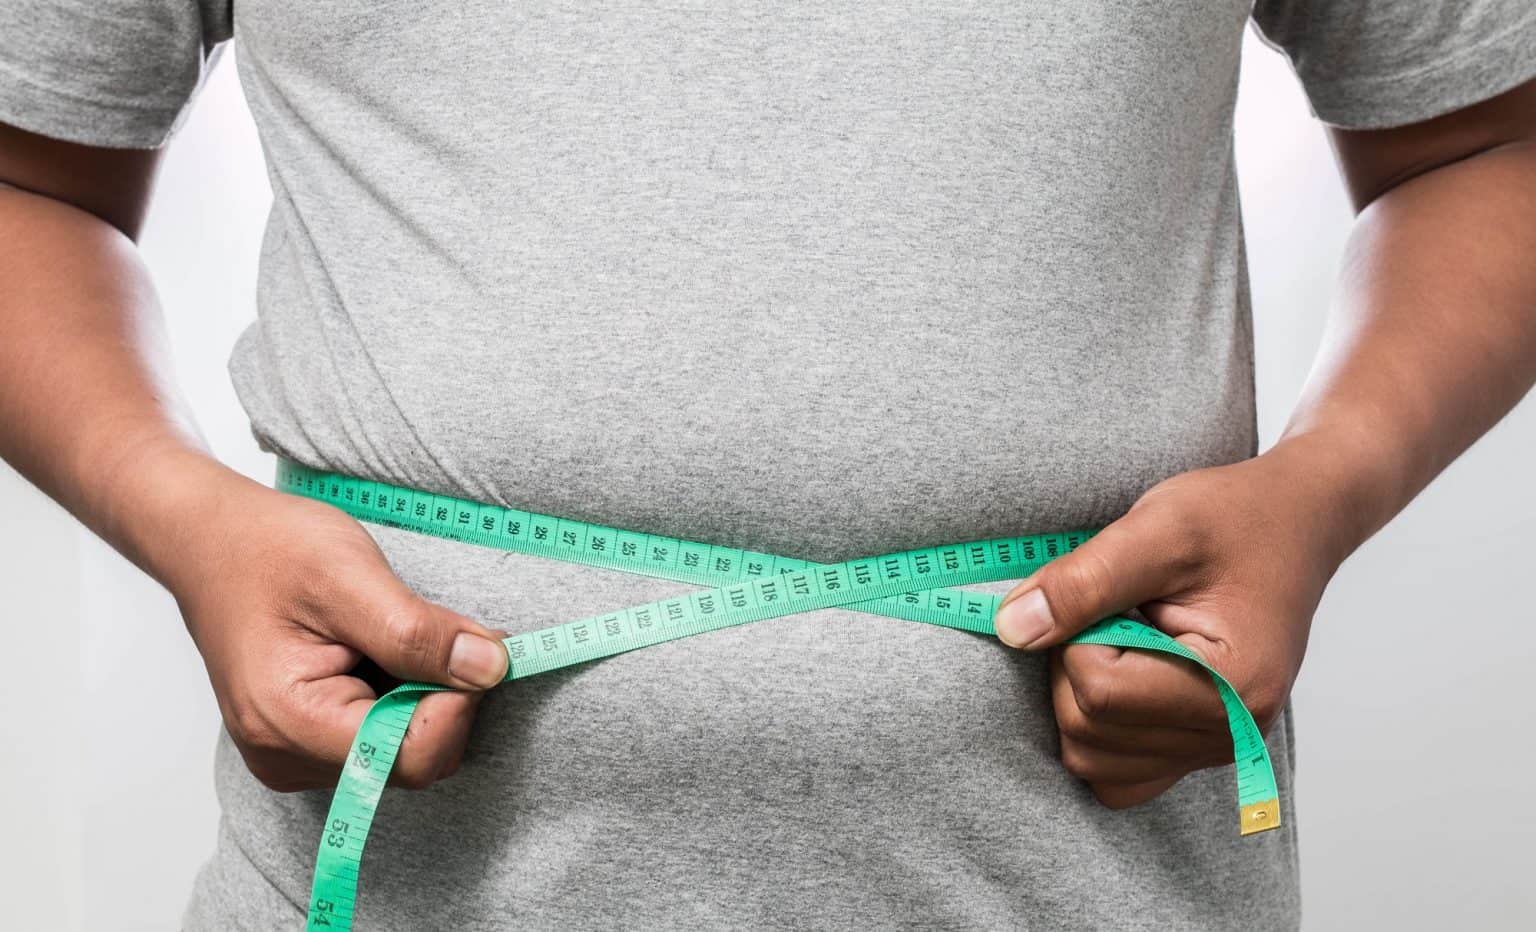 Gatilho genético para obesidade é identificado em novo estudo